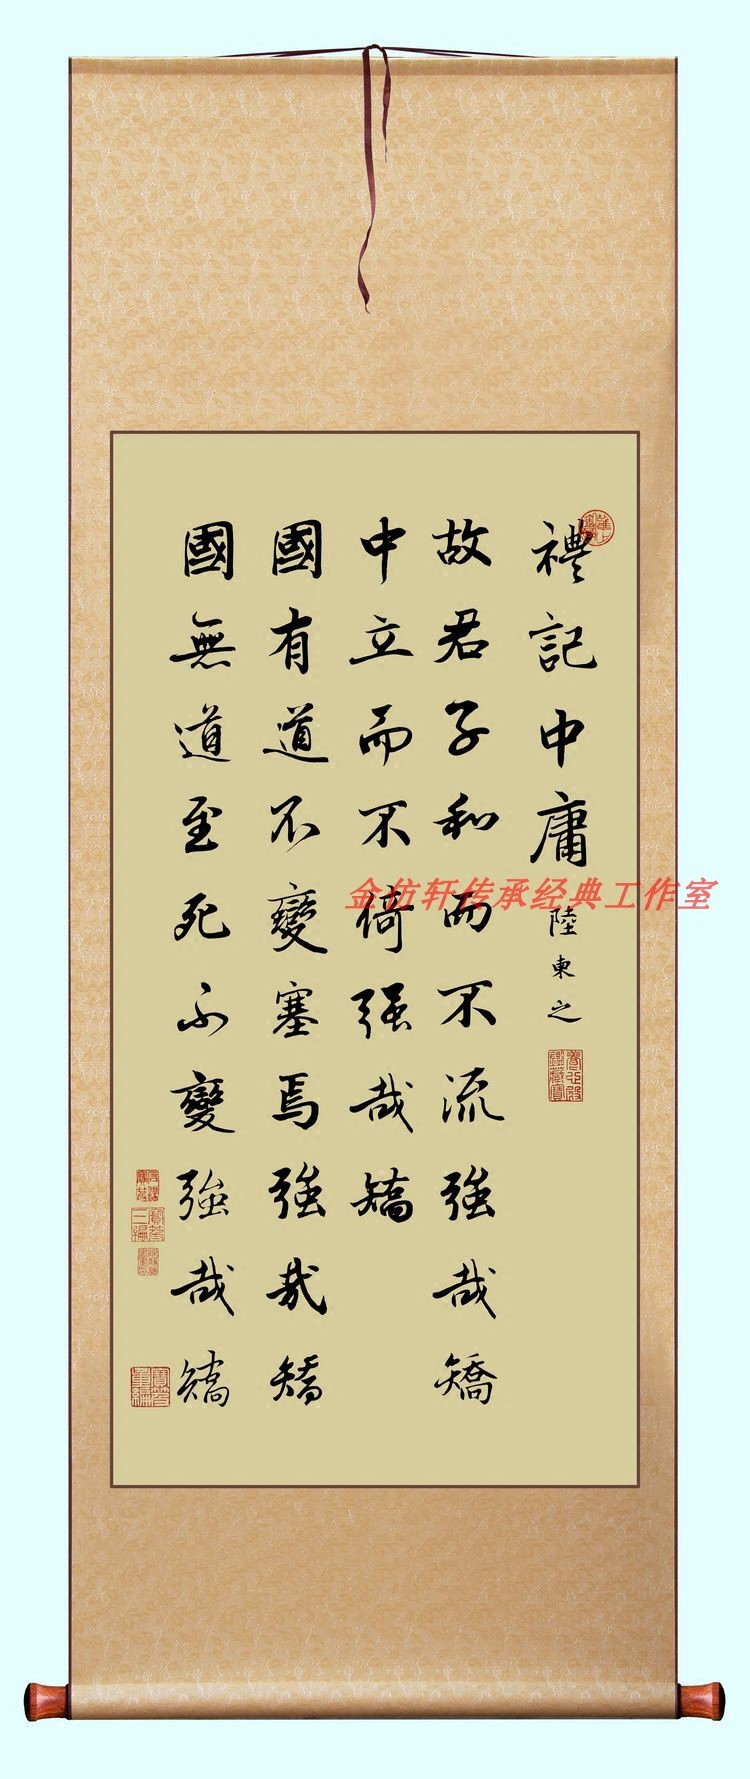 “中庸之道”——中国古代儒生参加科举考试必读篇目